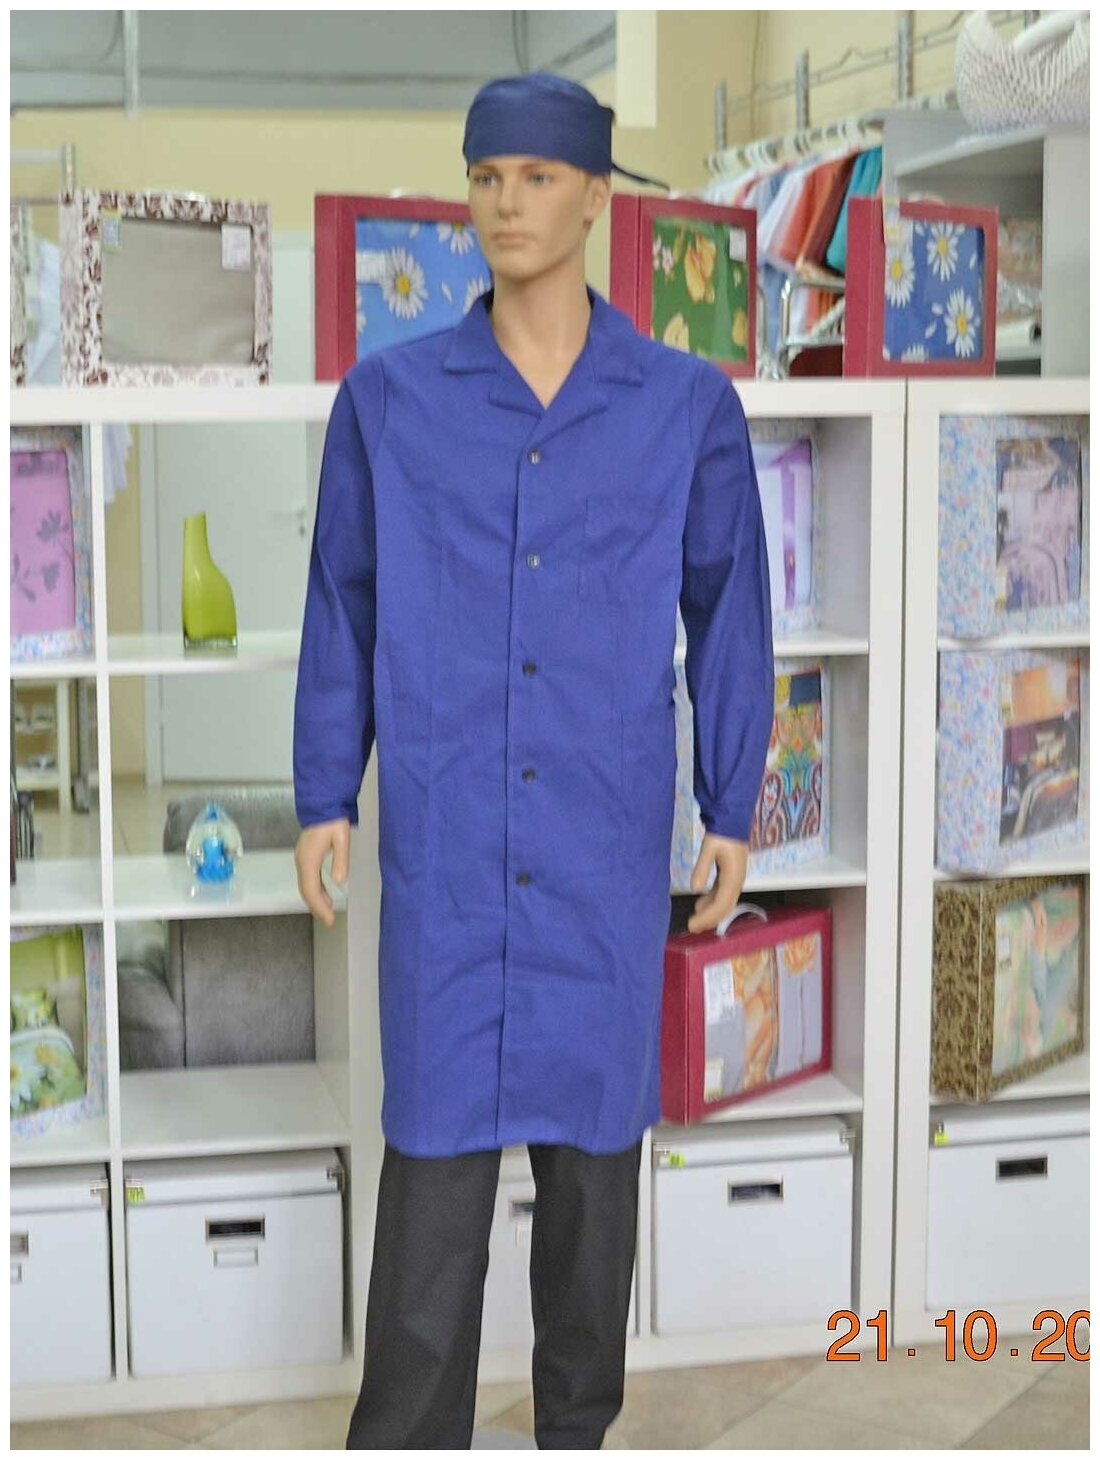 Халат для уроков труда и химии, производитель Фабрика швейных изделий №3, модель М-3, размер 56-58, цвет синий